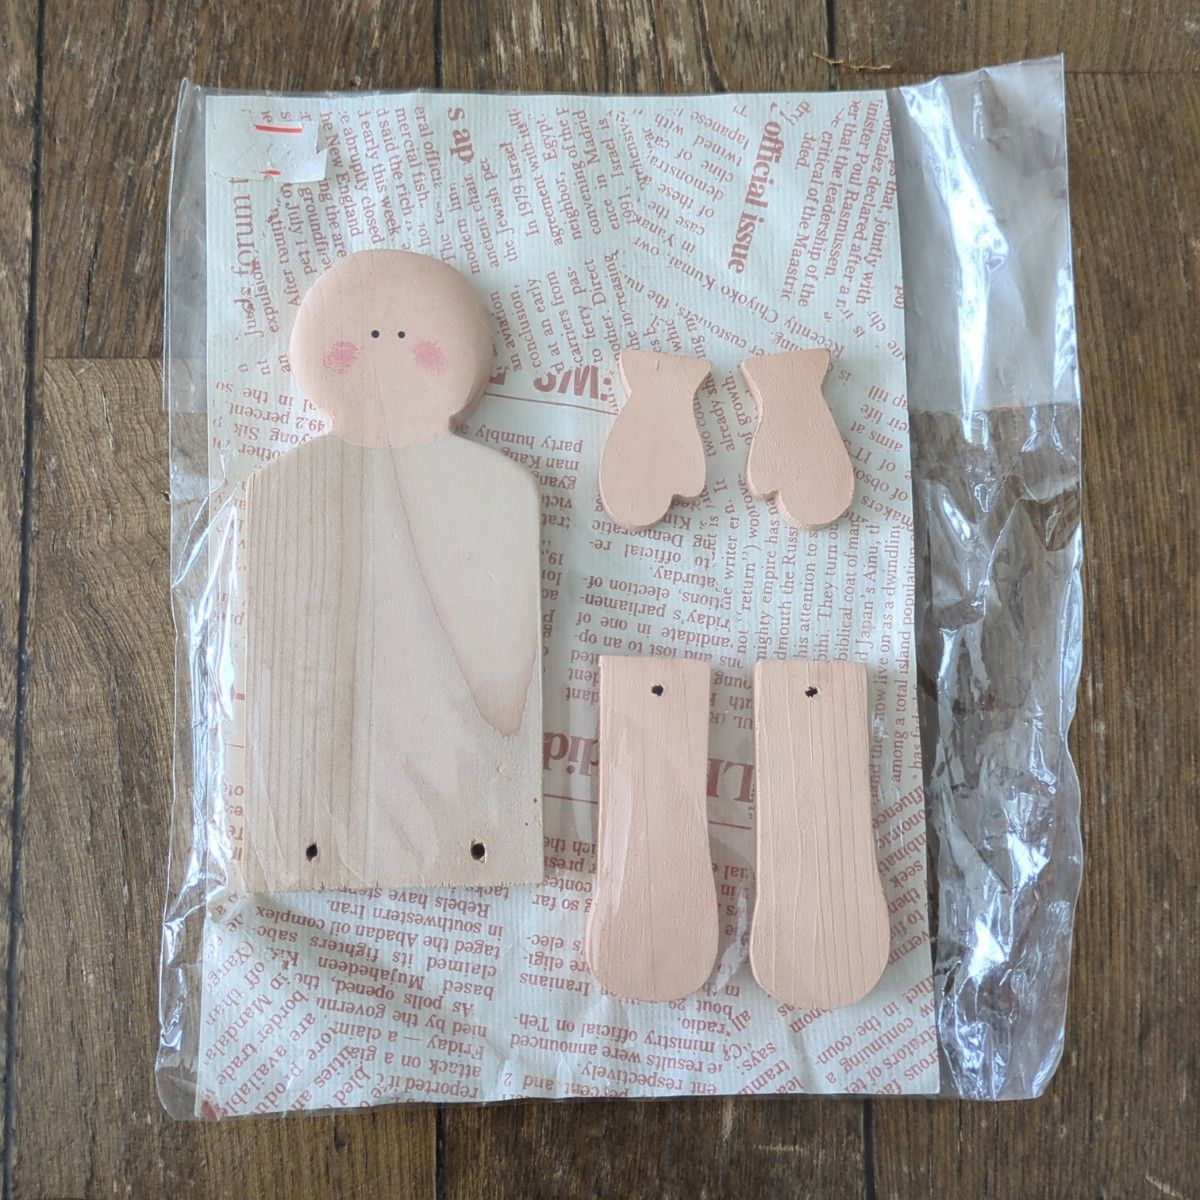 人形 小物 木製 キット 素材 ハンドメイド